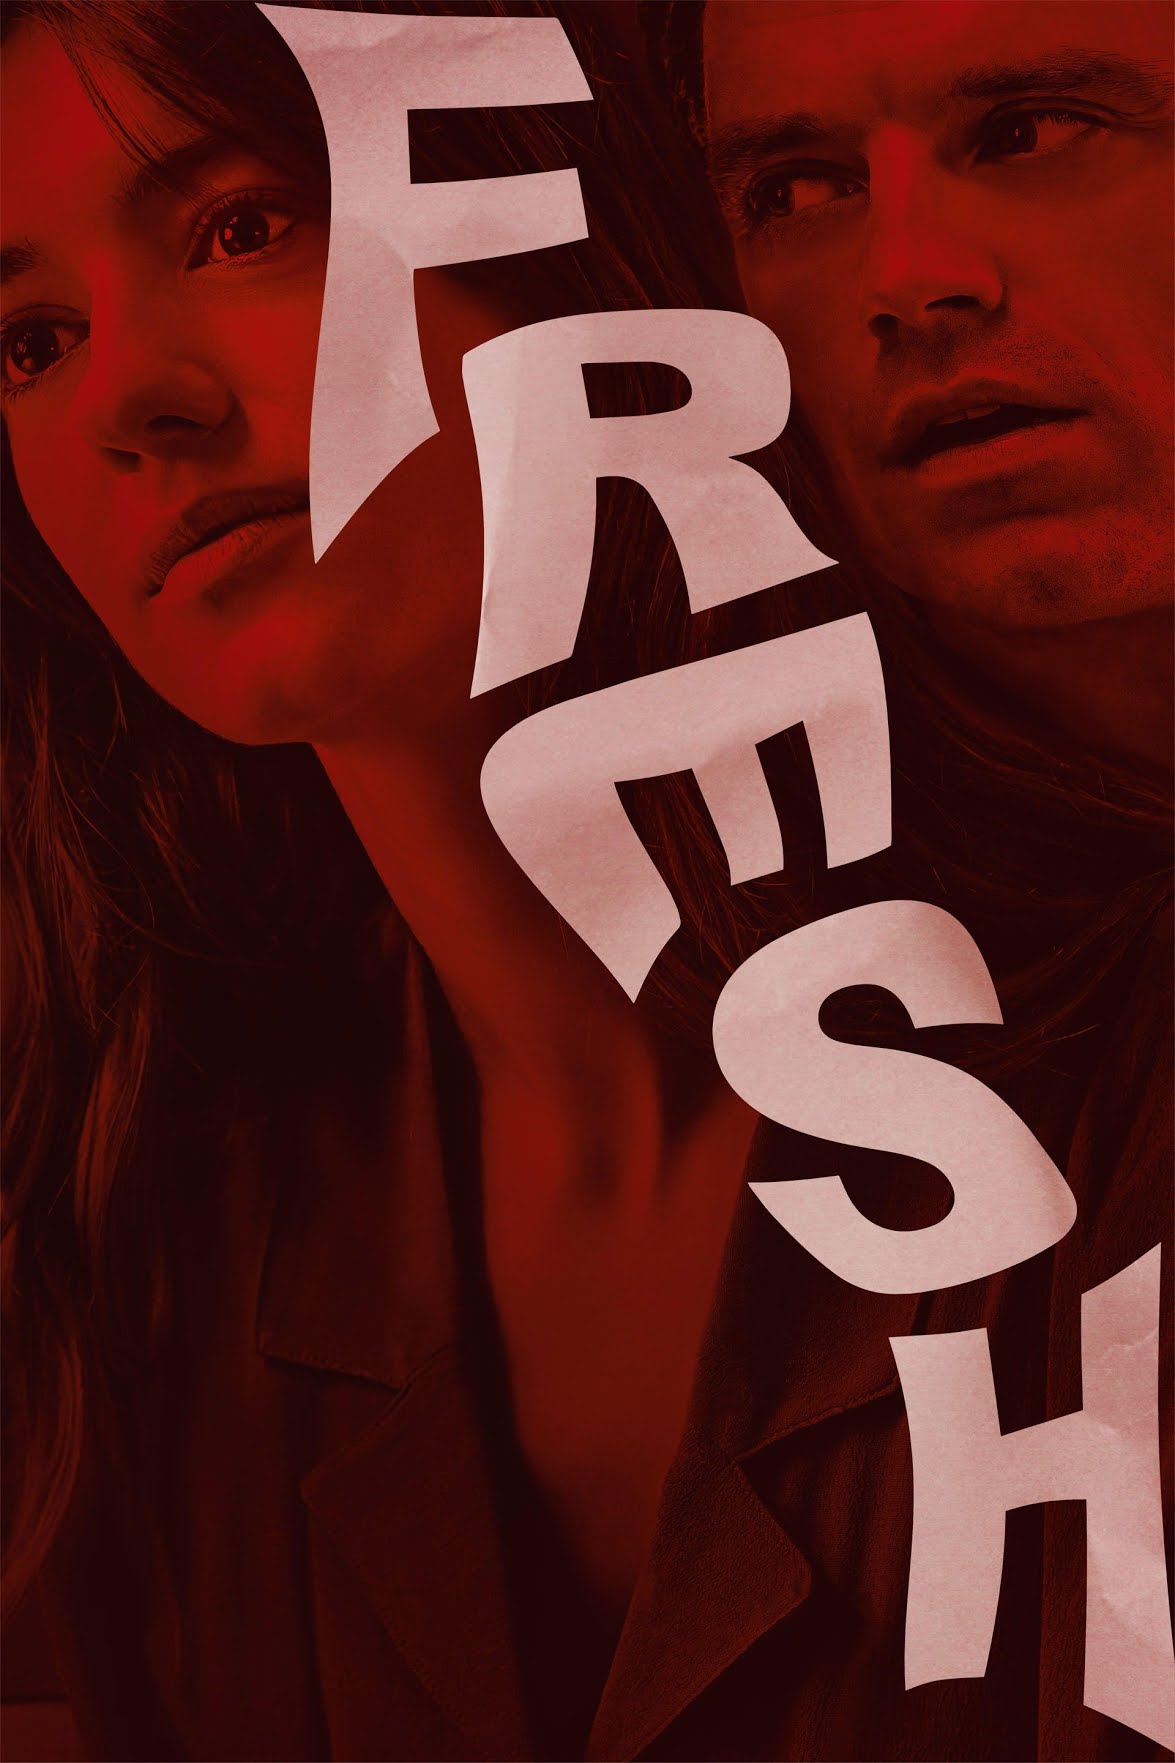 [ฝรั่ง] Fresh (2022) เฟรช [1080p] [Hulu] [พากย์อังกฤษ 5.1] [Soundtrack บรรยายไทย + อังกฤษ] [เสียงอังกฤษ + ซับไทย] [USERLOAD]